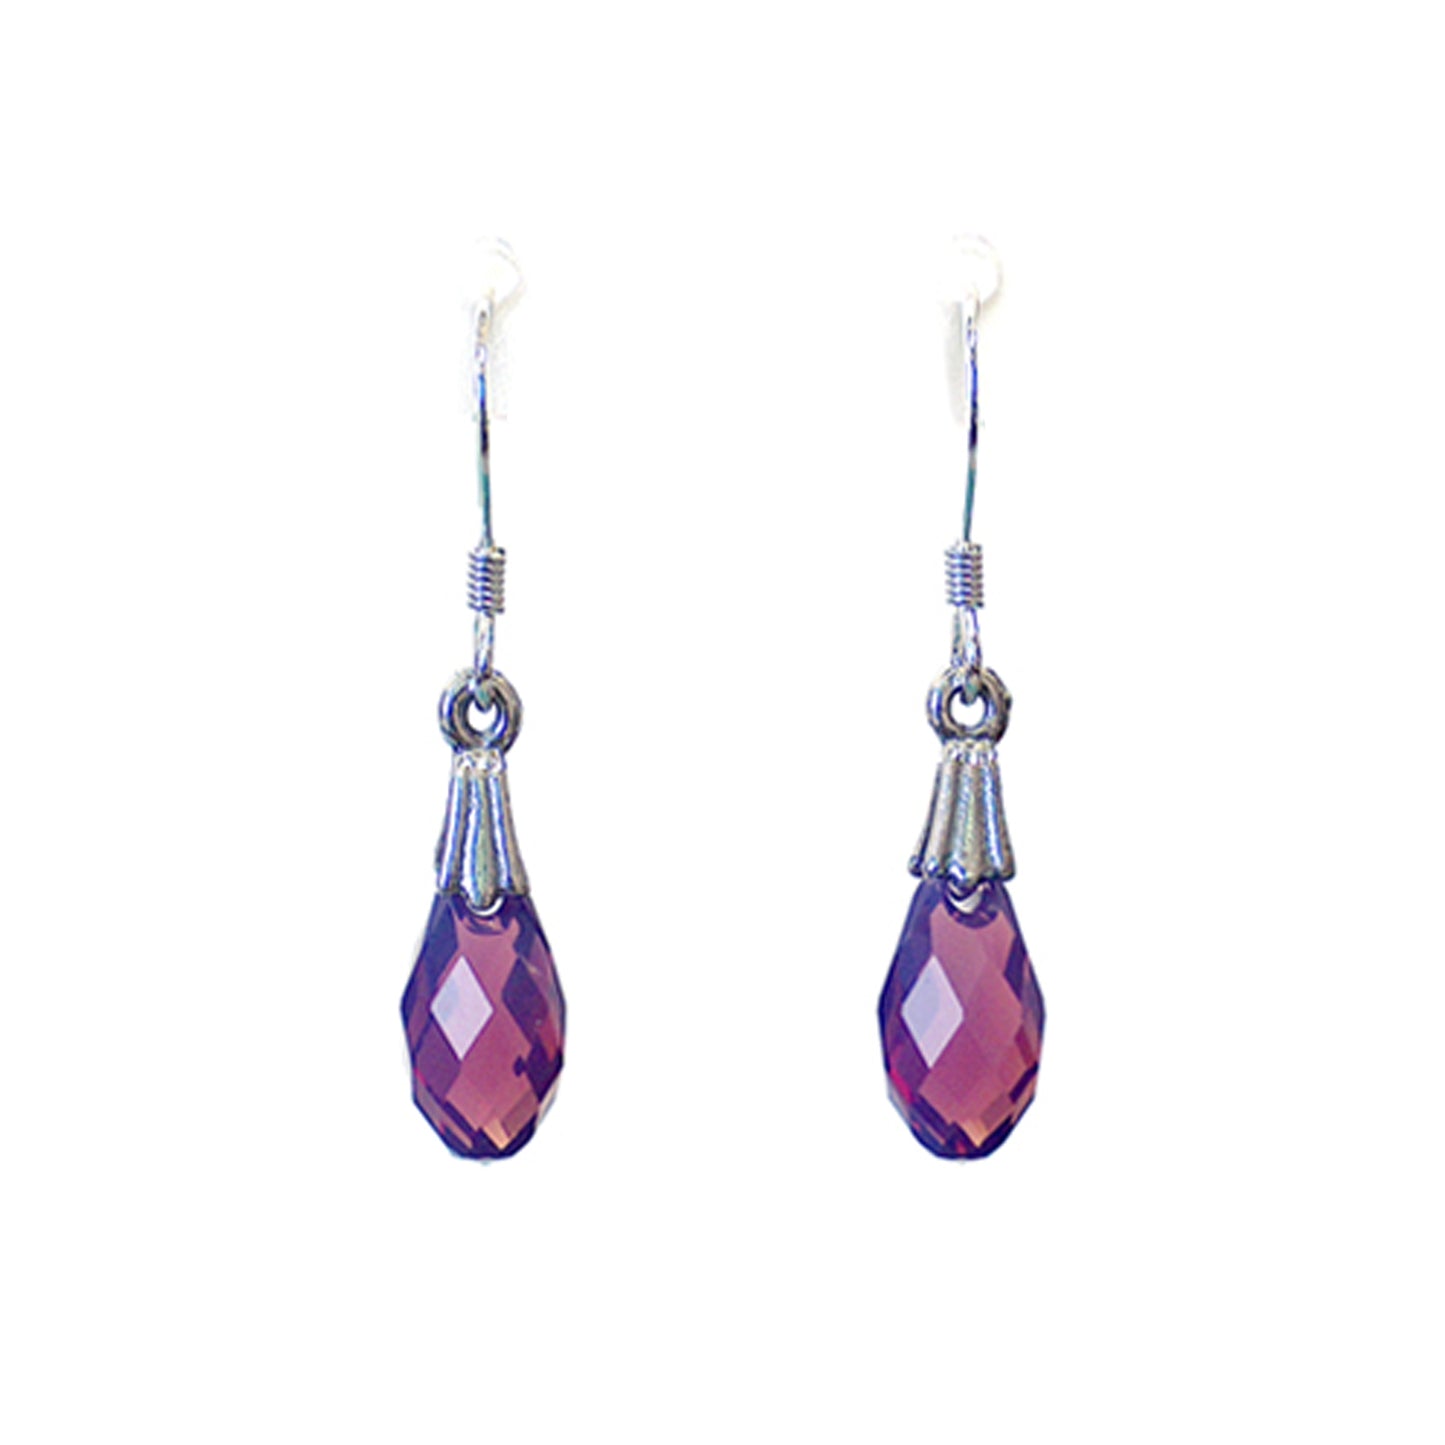 Purple Cyclamen Briolette Earrings / 30mm length / fleur de lis bail / crystal pendant / sterling silver hook earwires